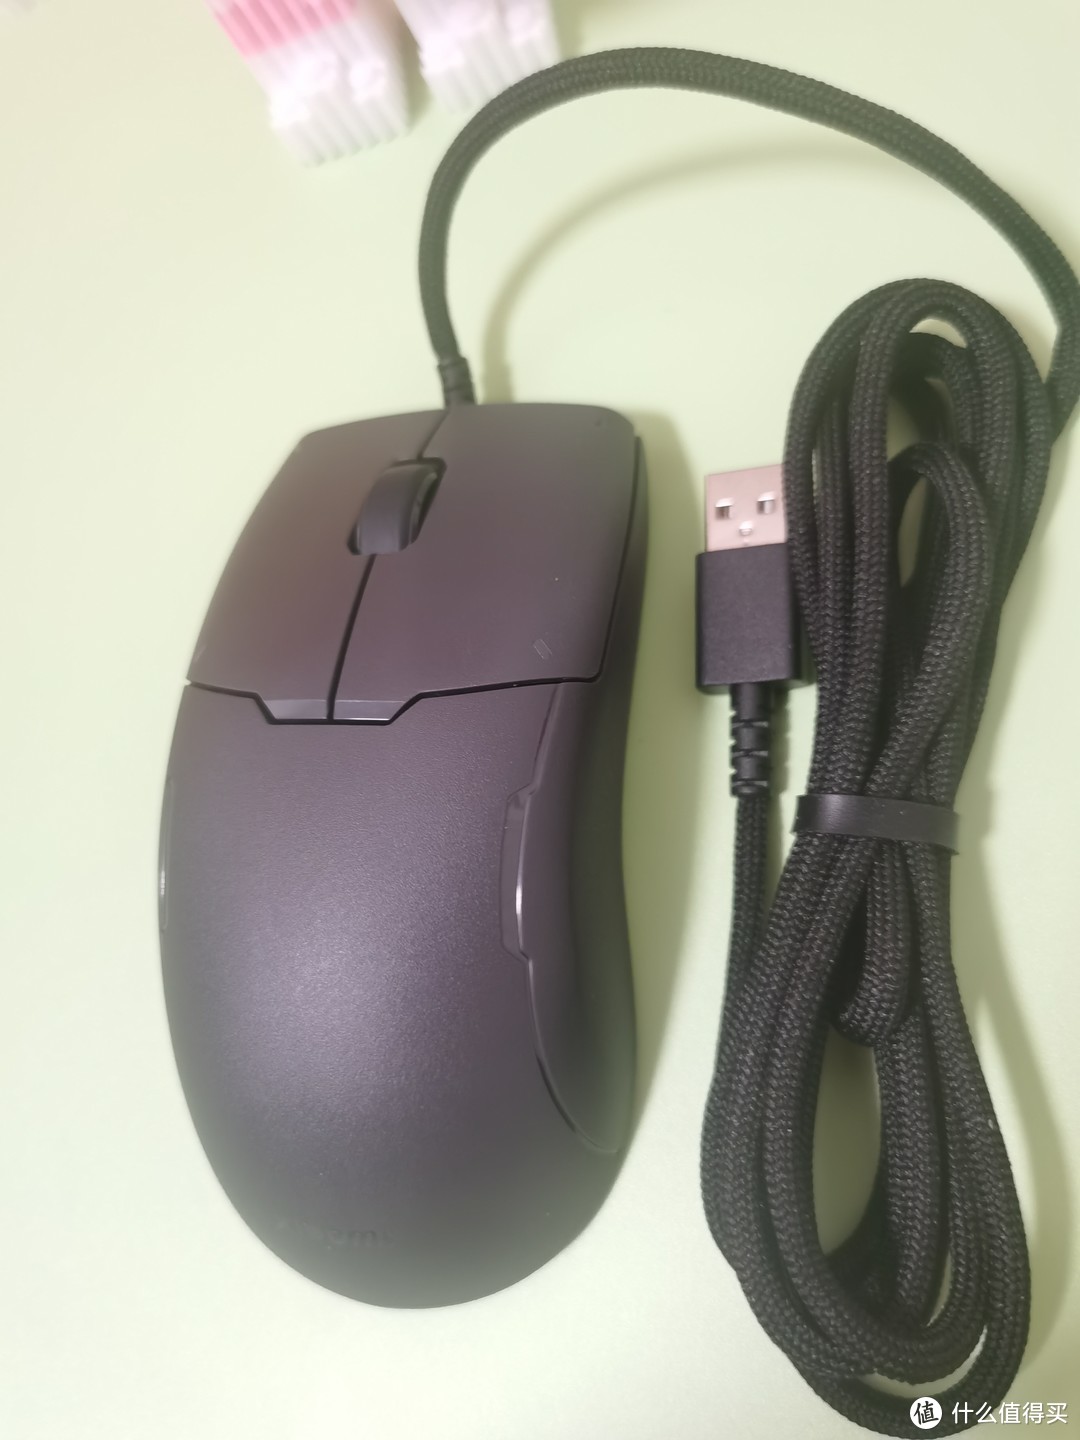 小米游戏鼠标Lite—高性价比入门级游戏鼠标推荐